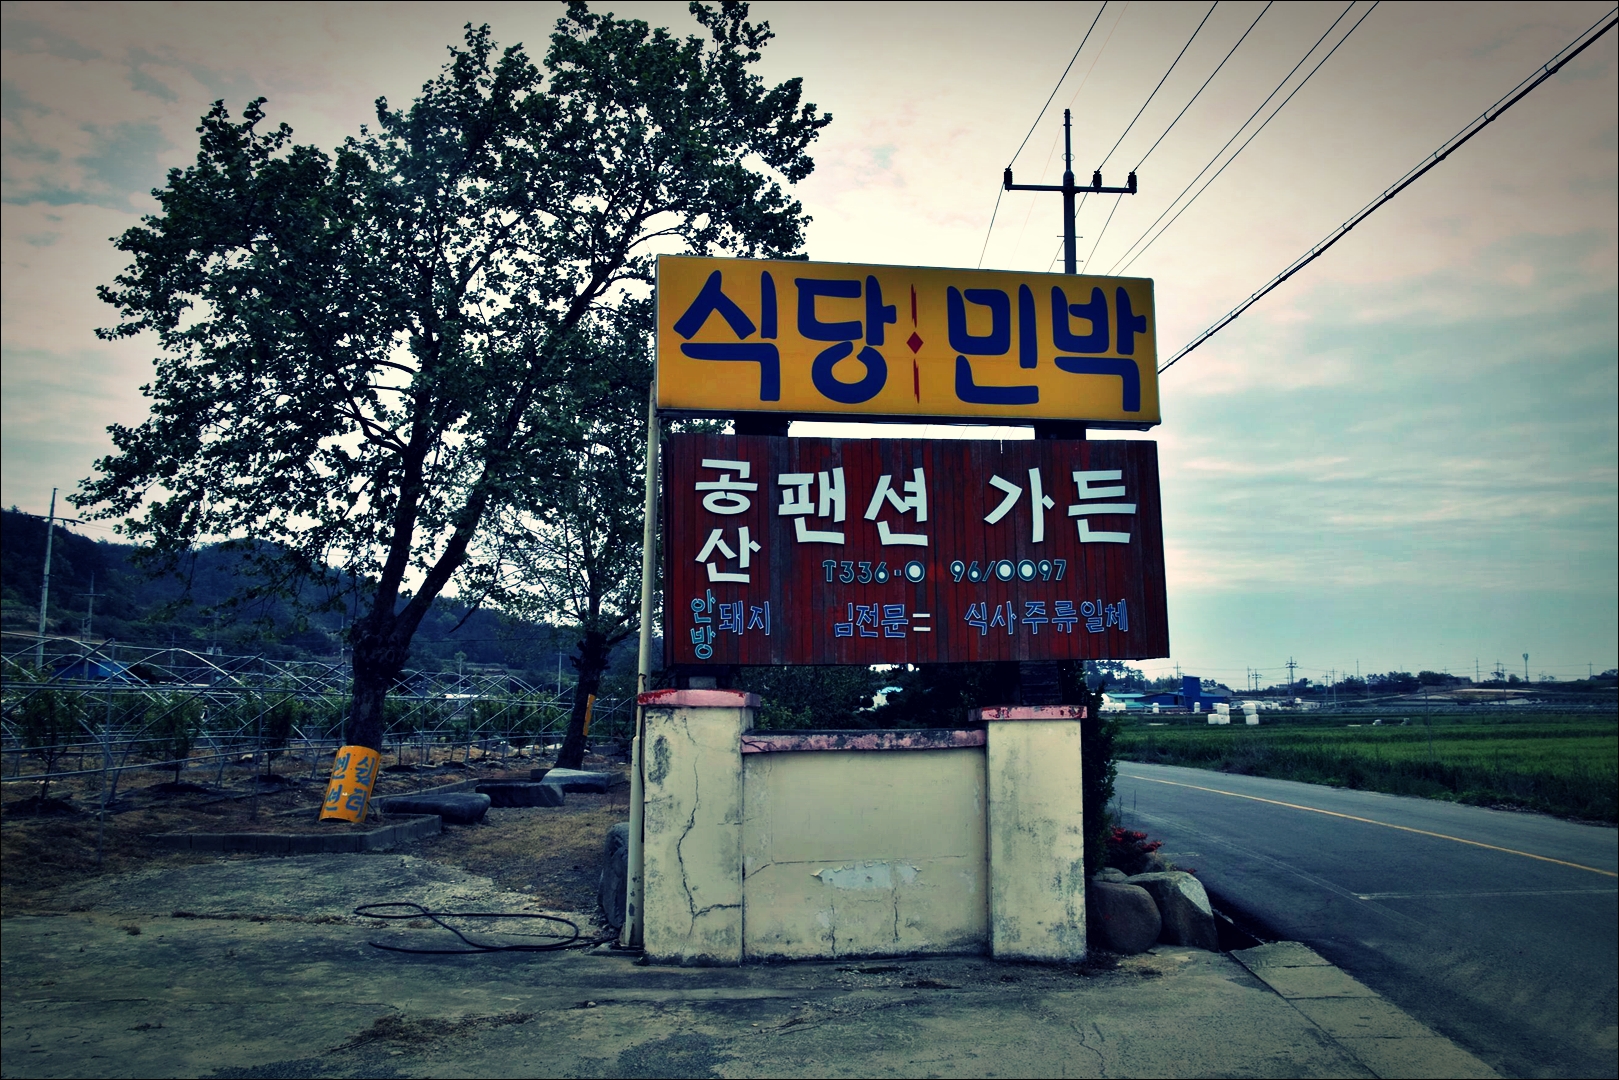 입구-'나주 공산펜션가든 Gongsan Pension Garden Naju'